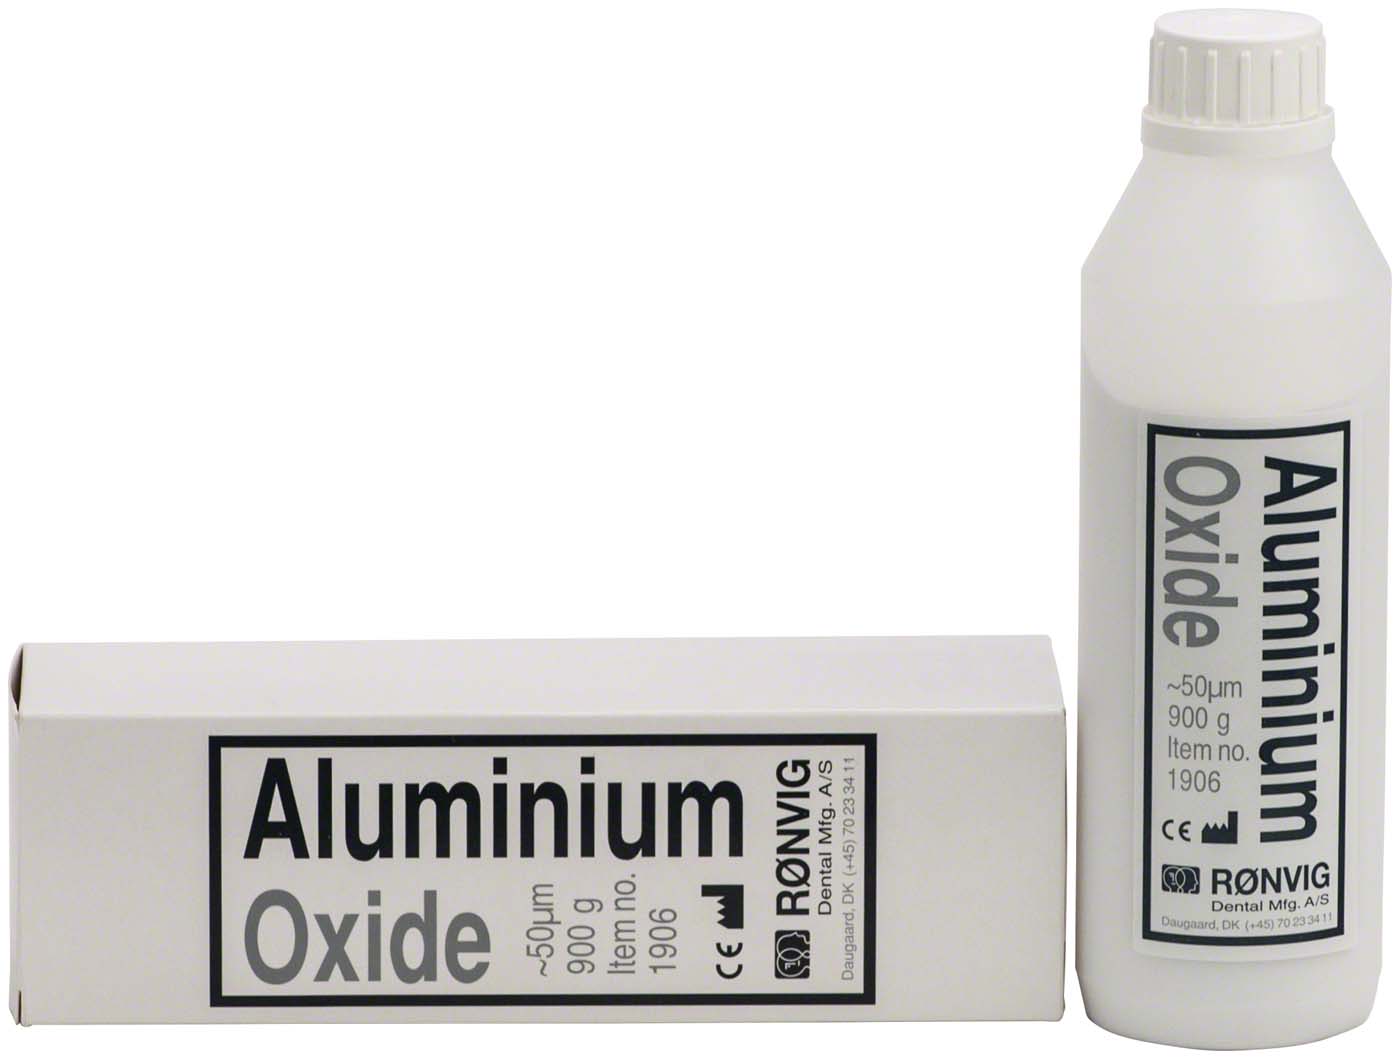 Aluminium Oxide Ronvig